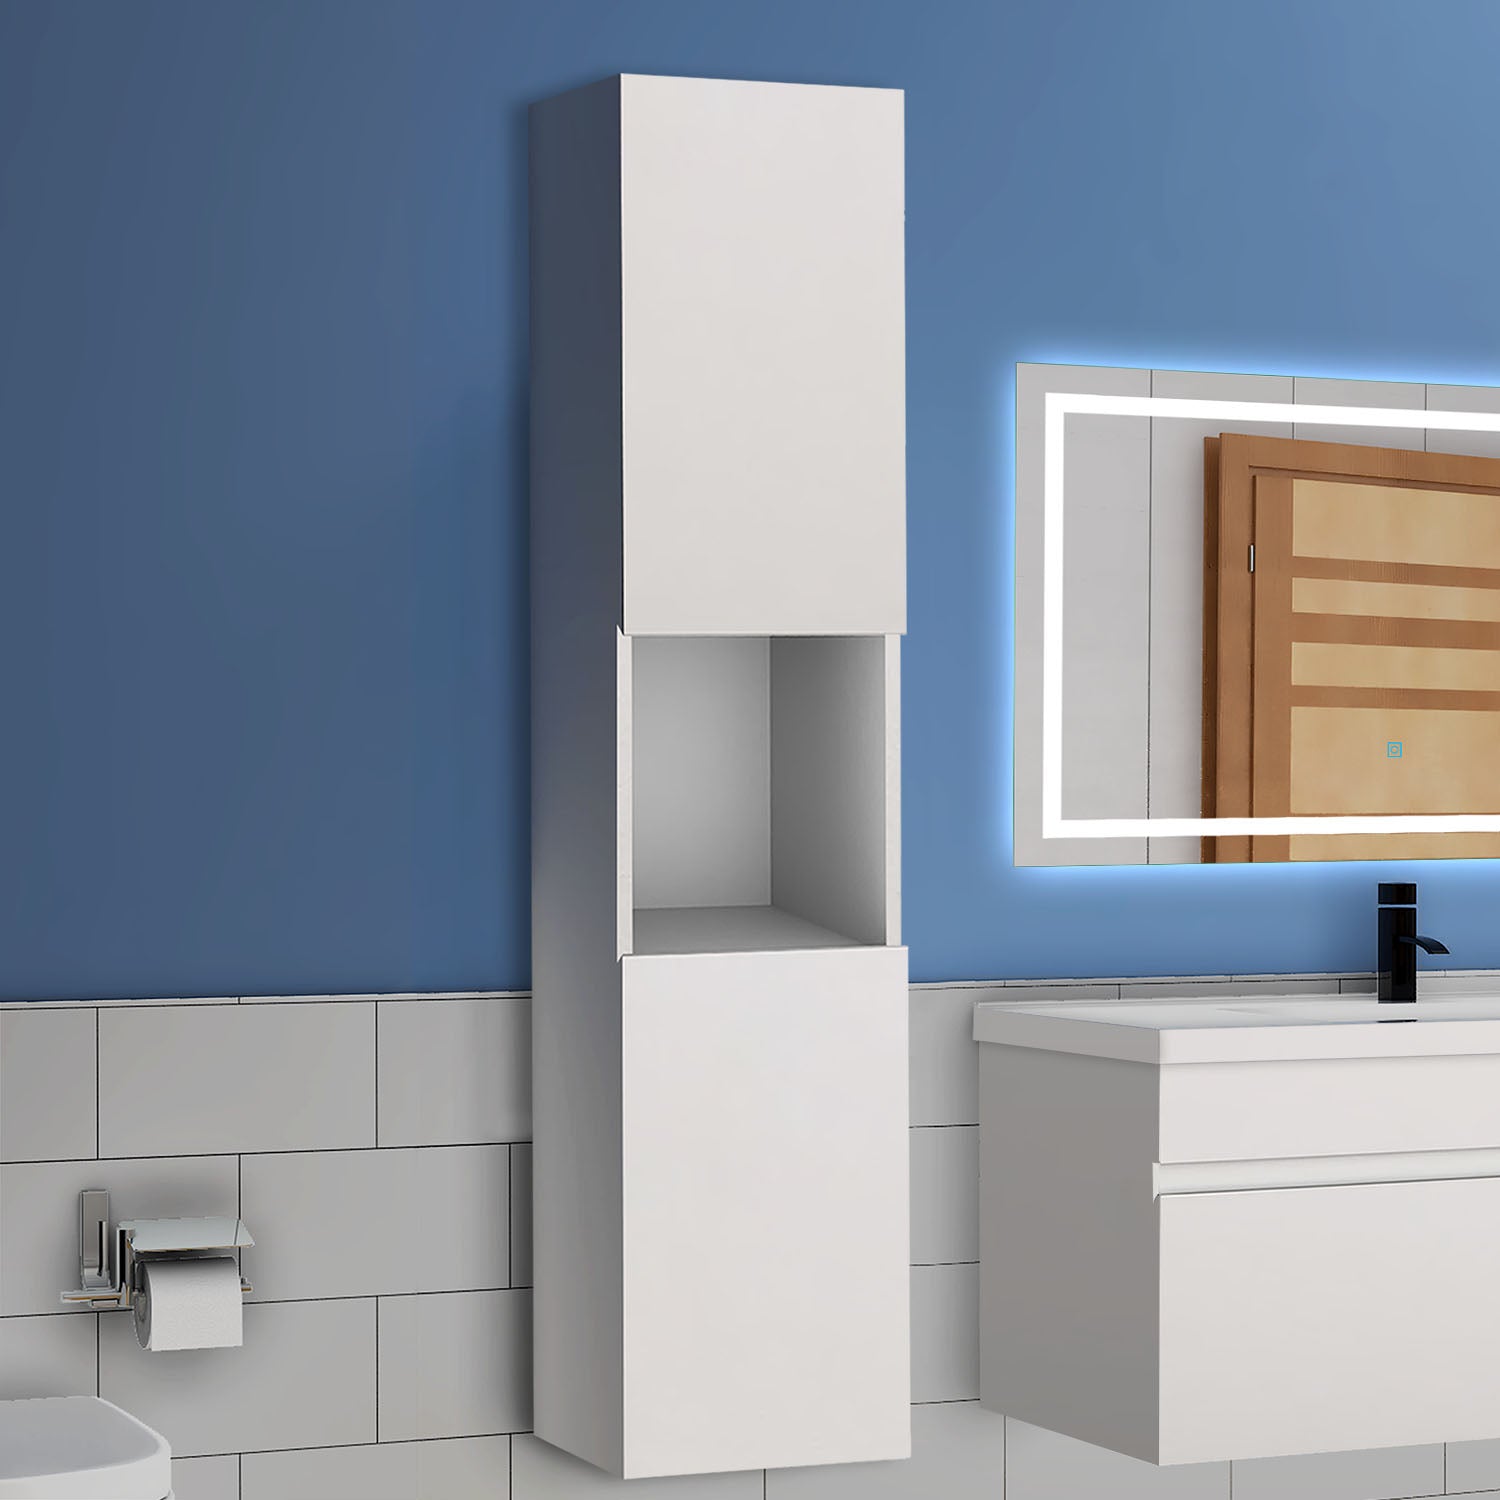 300x300x110cm Meuble de rangement pour salle de bain, colonne de salle de bain blanc/anthracite/bois clair à suspendre, avec porte et niche -Livraison gratuite